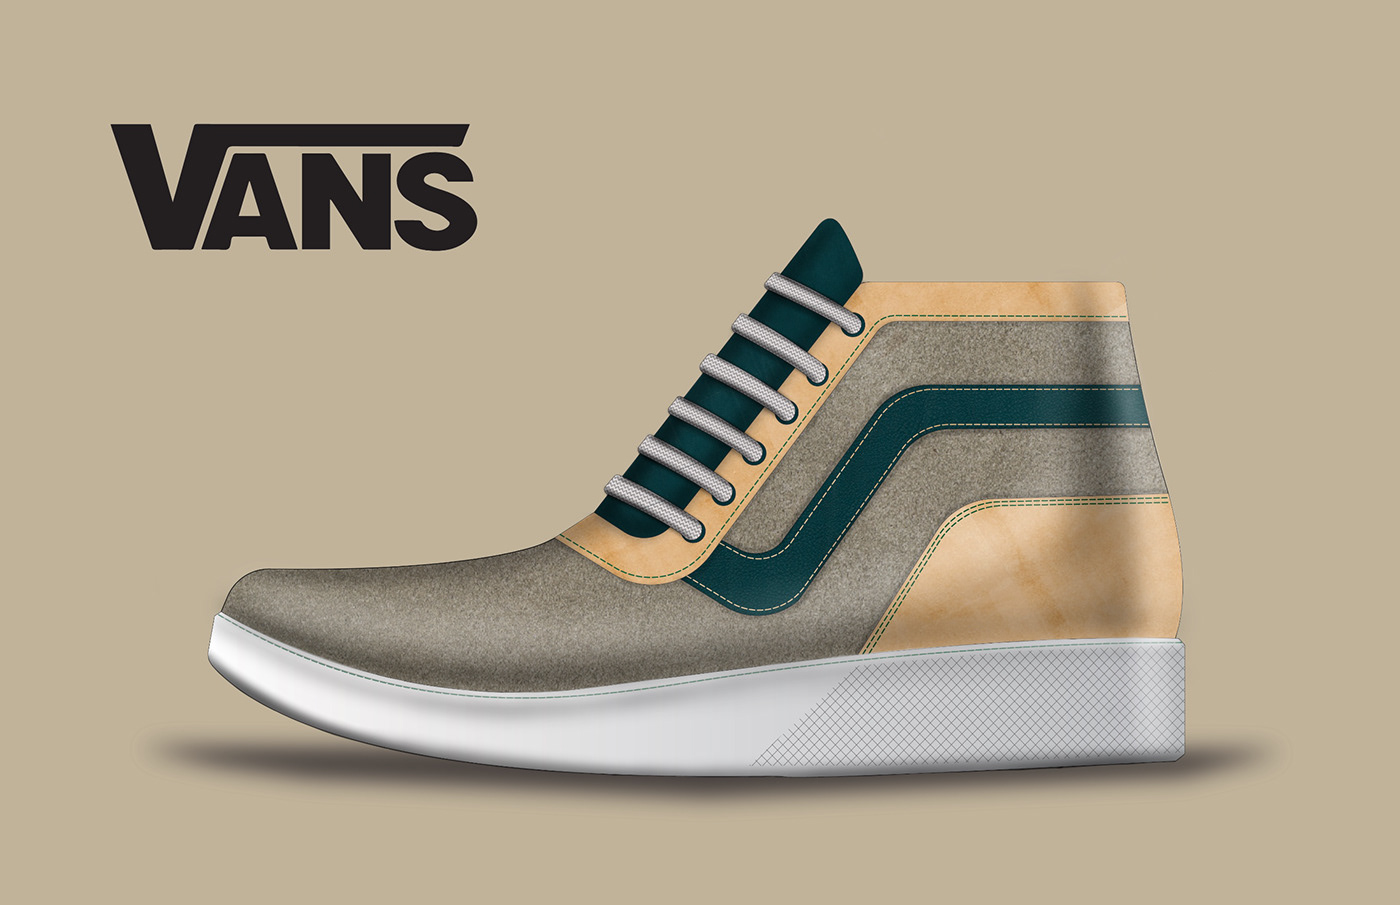 footwear footwear design shoes Vans boots Nike rendering sketch digital sneakers